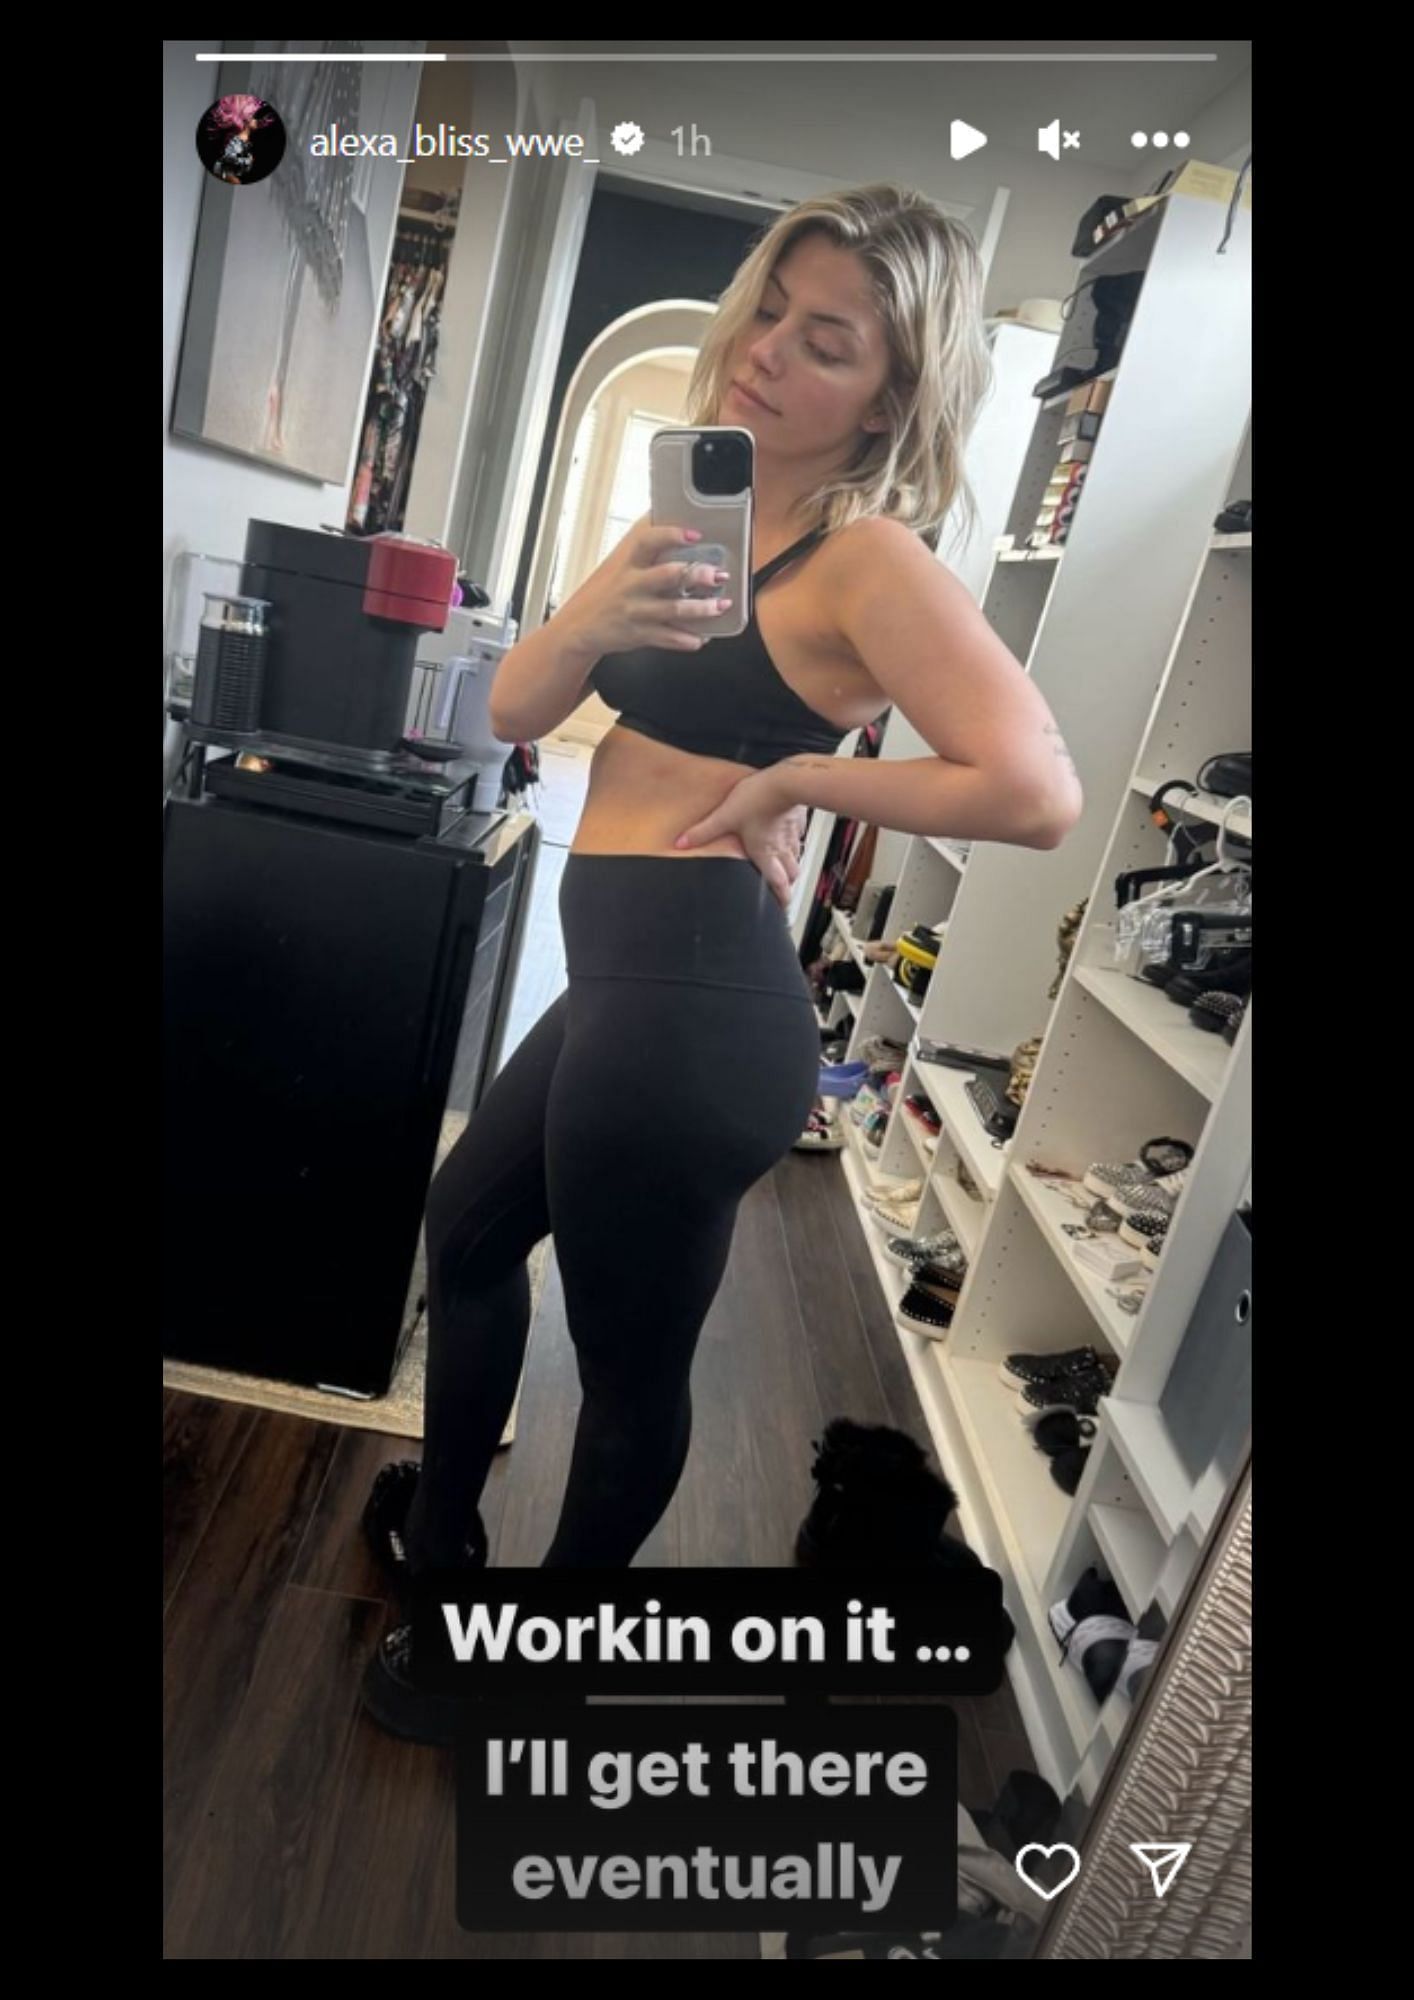 Alexa Bliss shares an update on Instagram